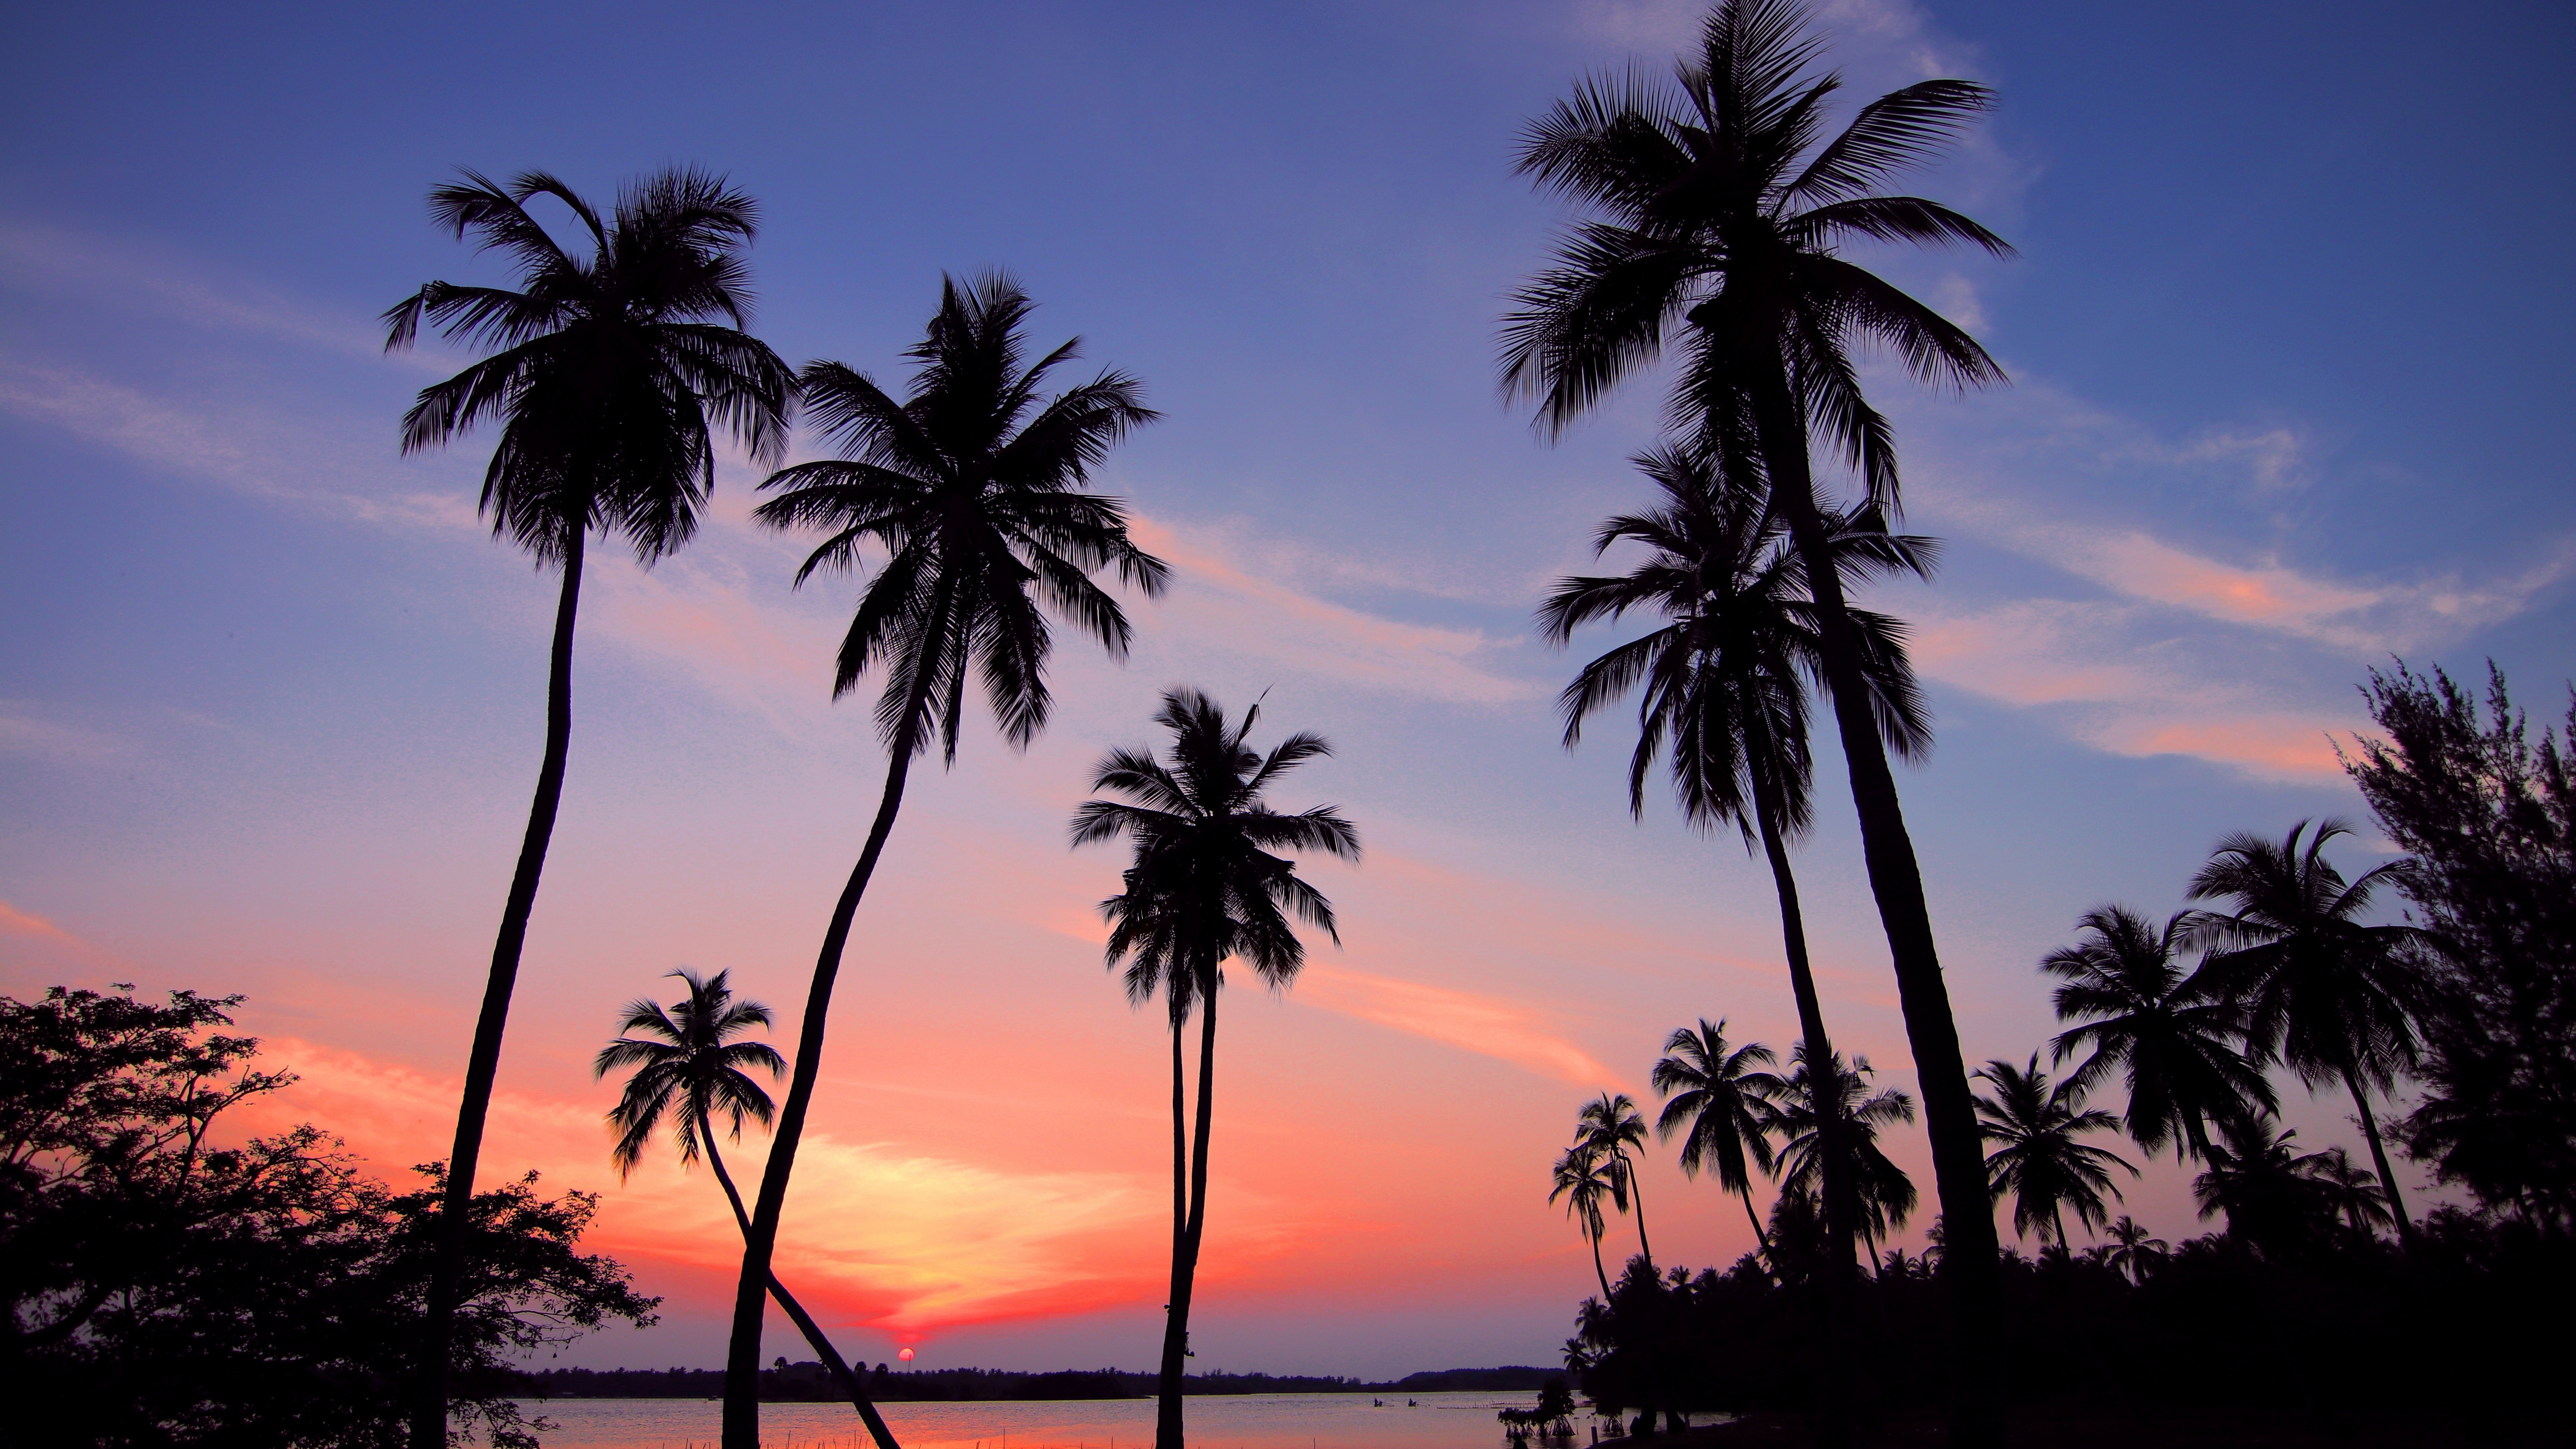 HD wallpaper Palma Maldives sunset beach sea palm tree sunset at  beach photo  Wallpaper Flare